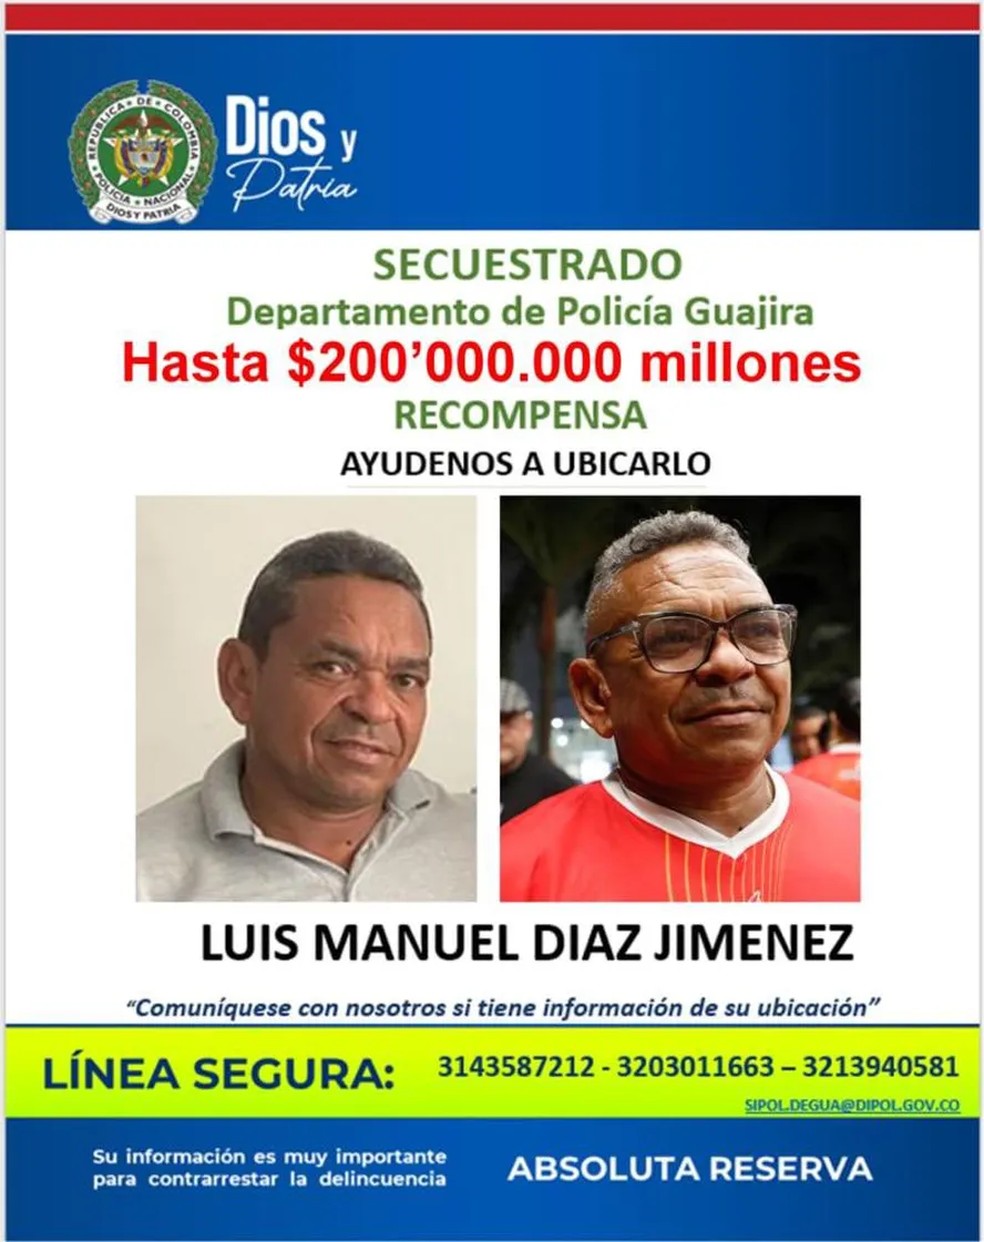 Pai de Luis Diaz, jogador do Liverpool, é sequestrado na Colômbia